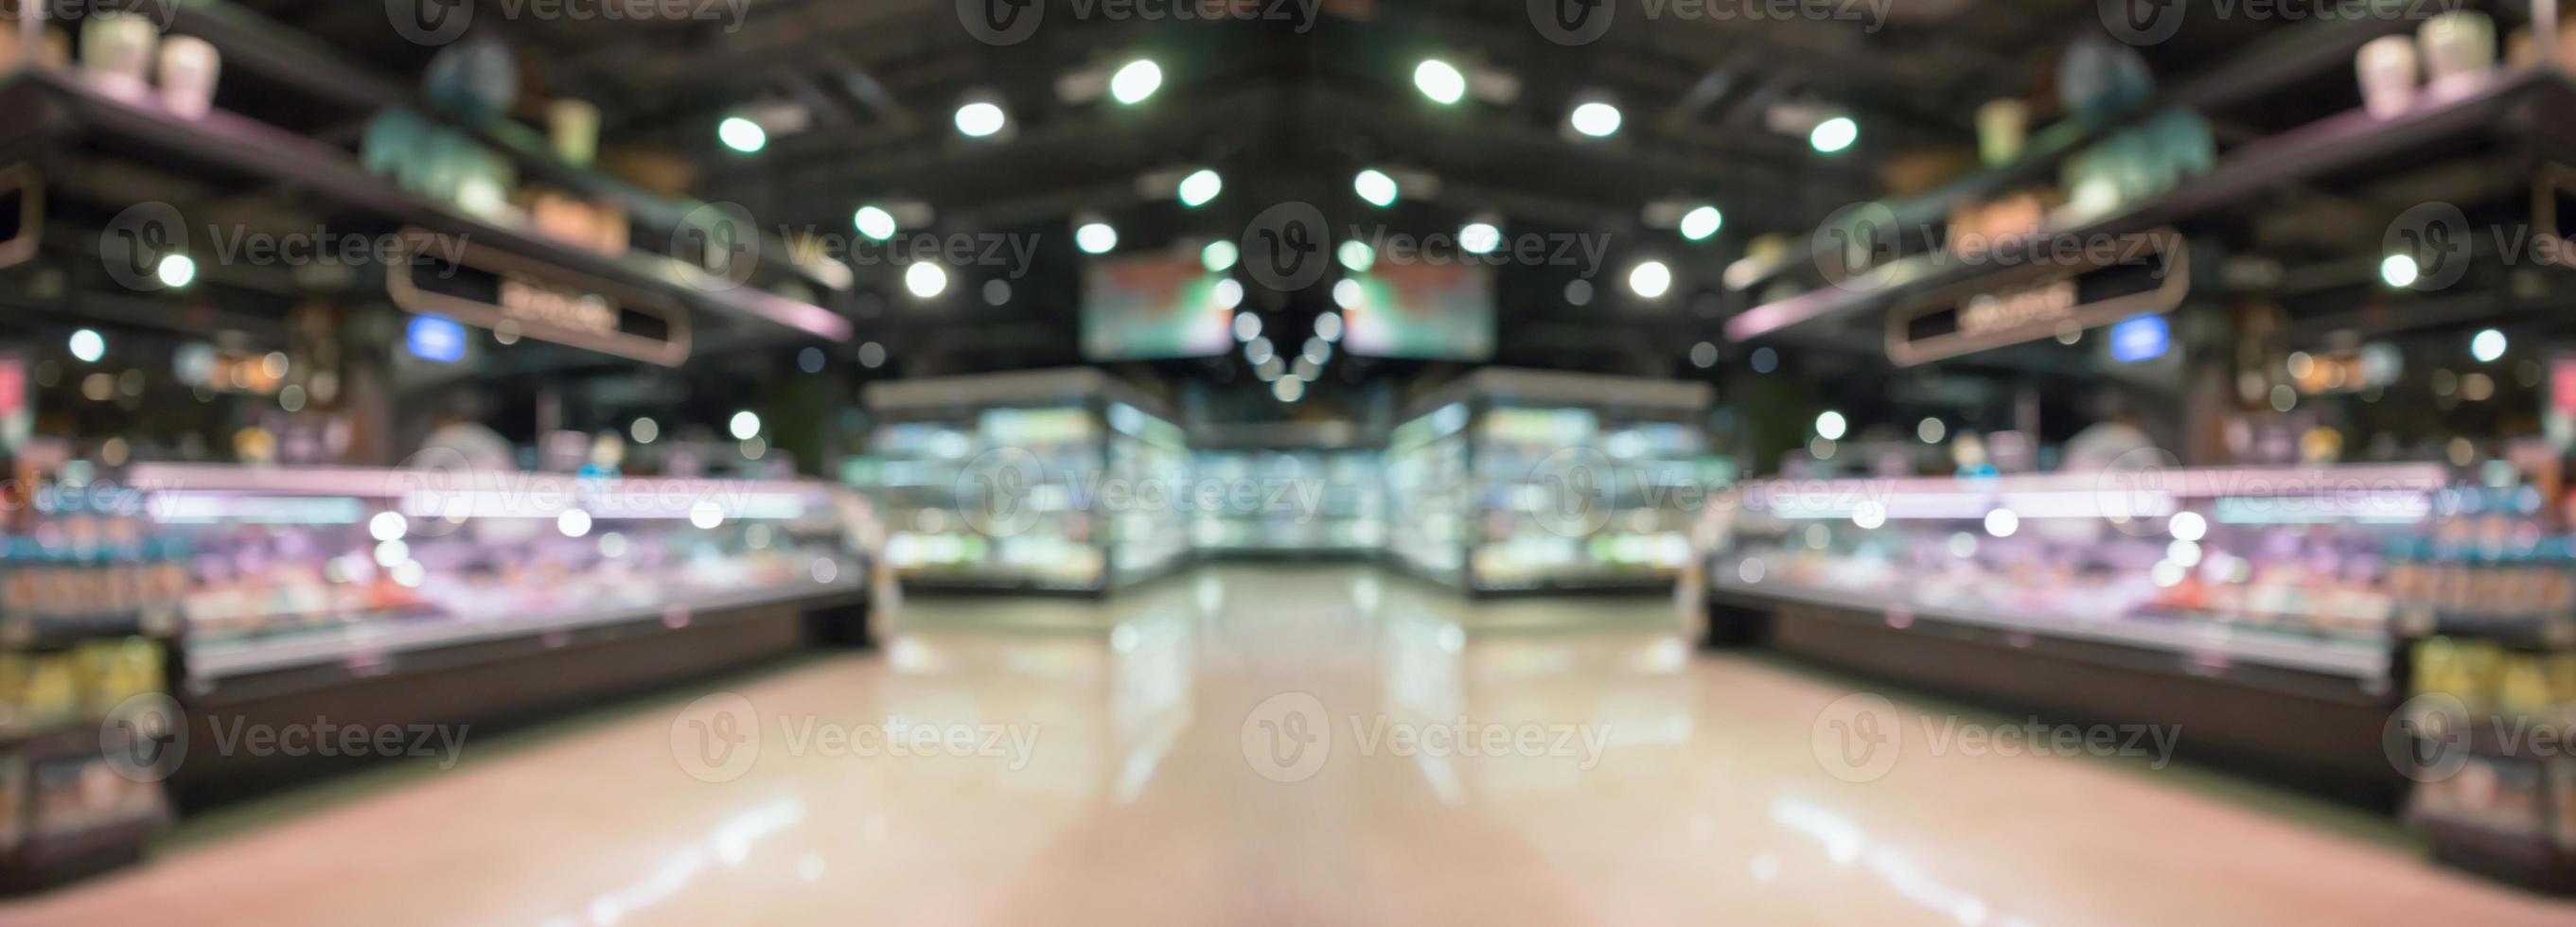 Supermarché épicerie allée intérieure abstrait arrière-plan flou photo